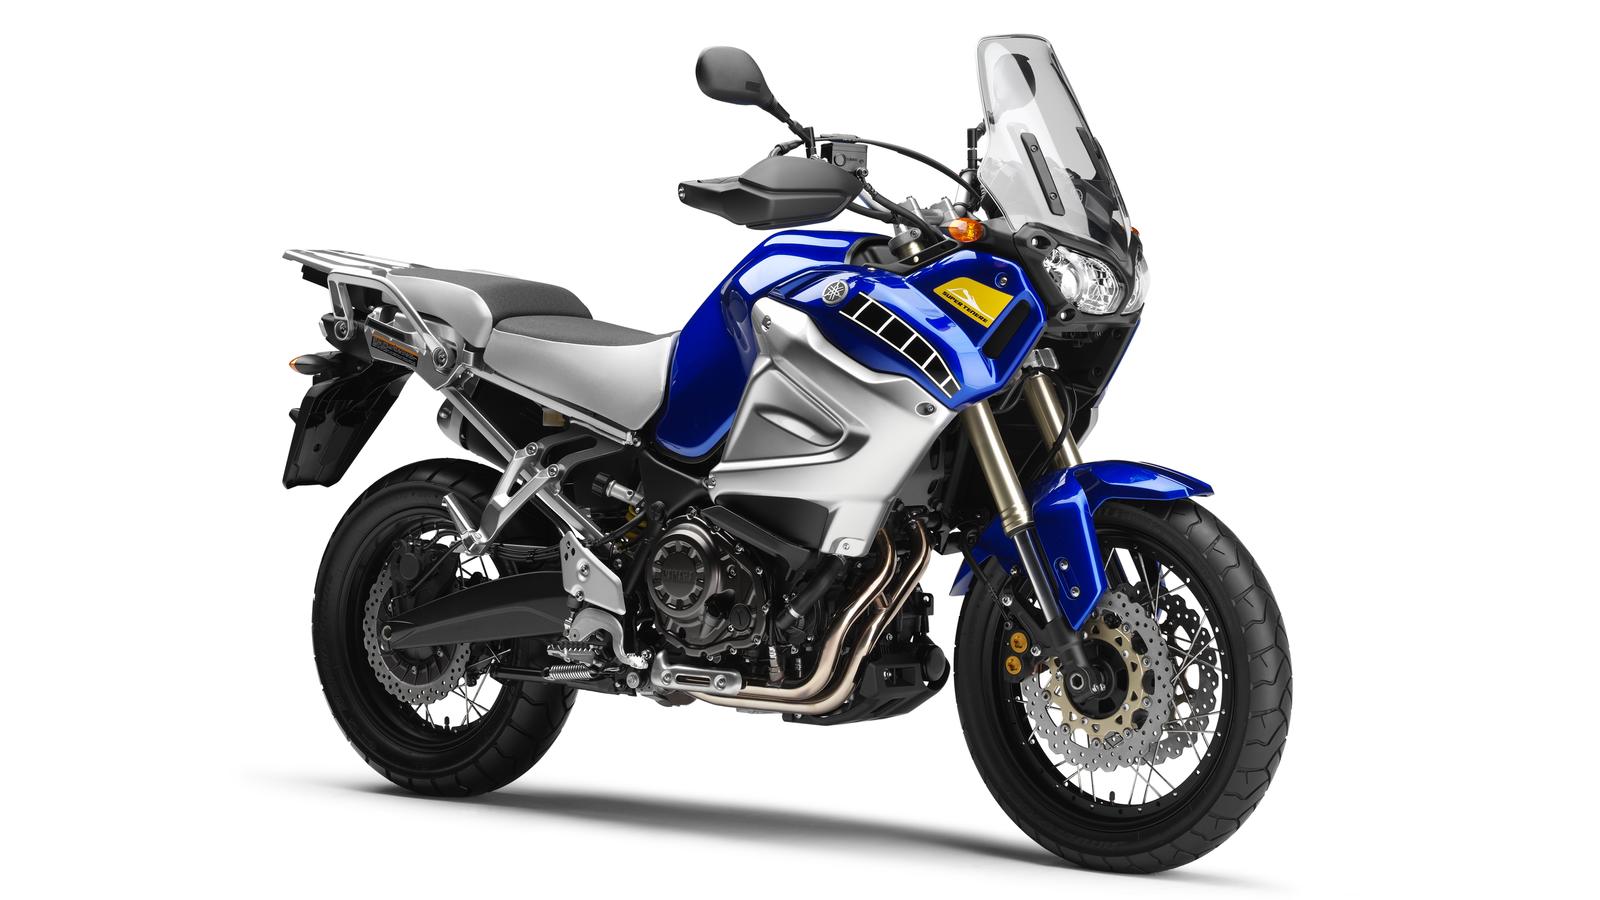 Gebrauchte Yamaha XT 1200 Z Super Ténéré ABS Motorräder kaufen